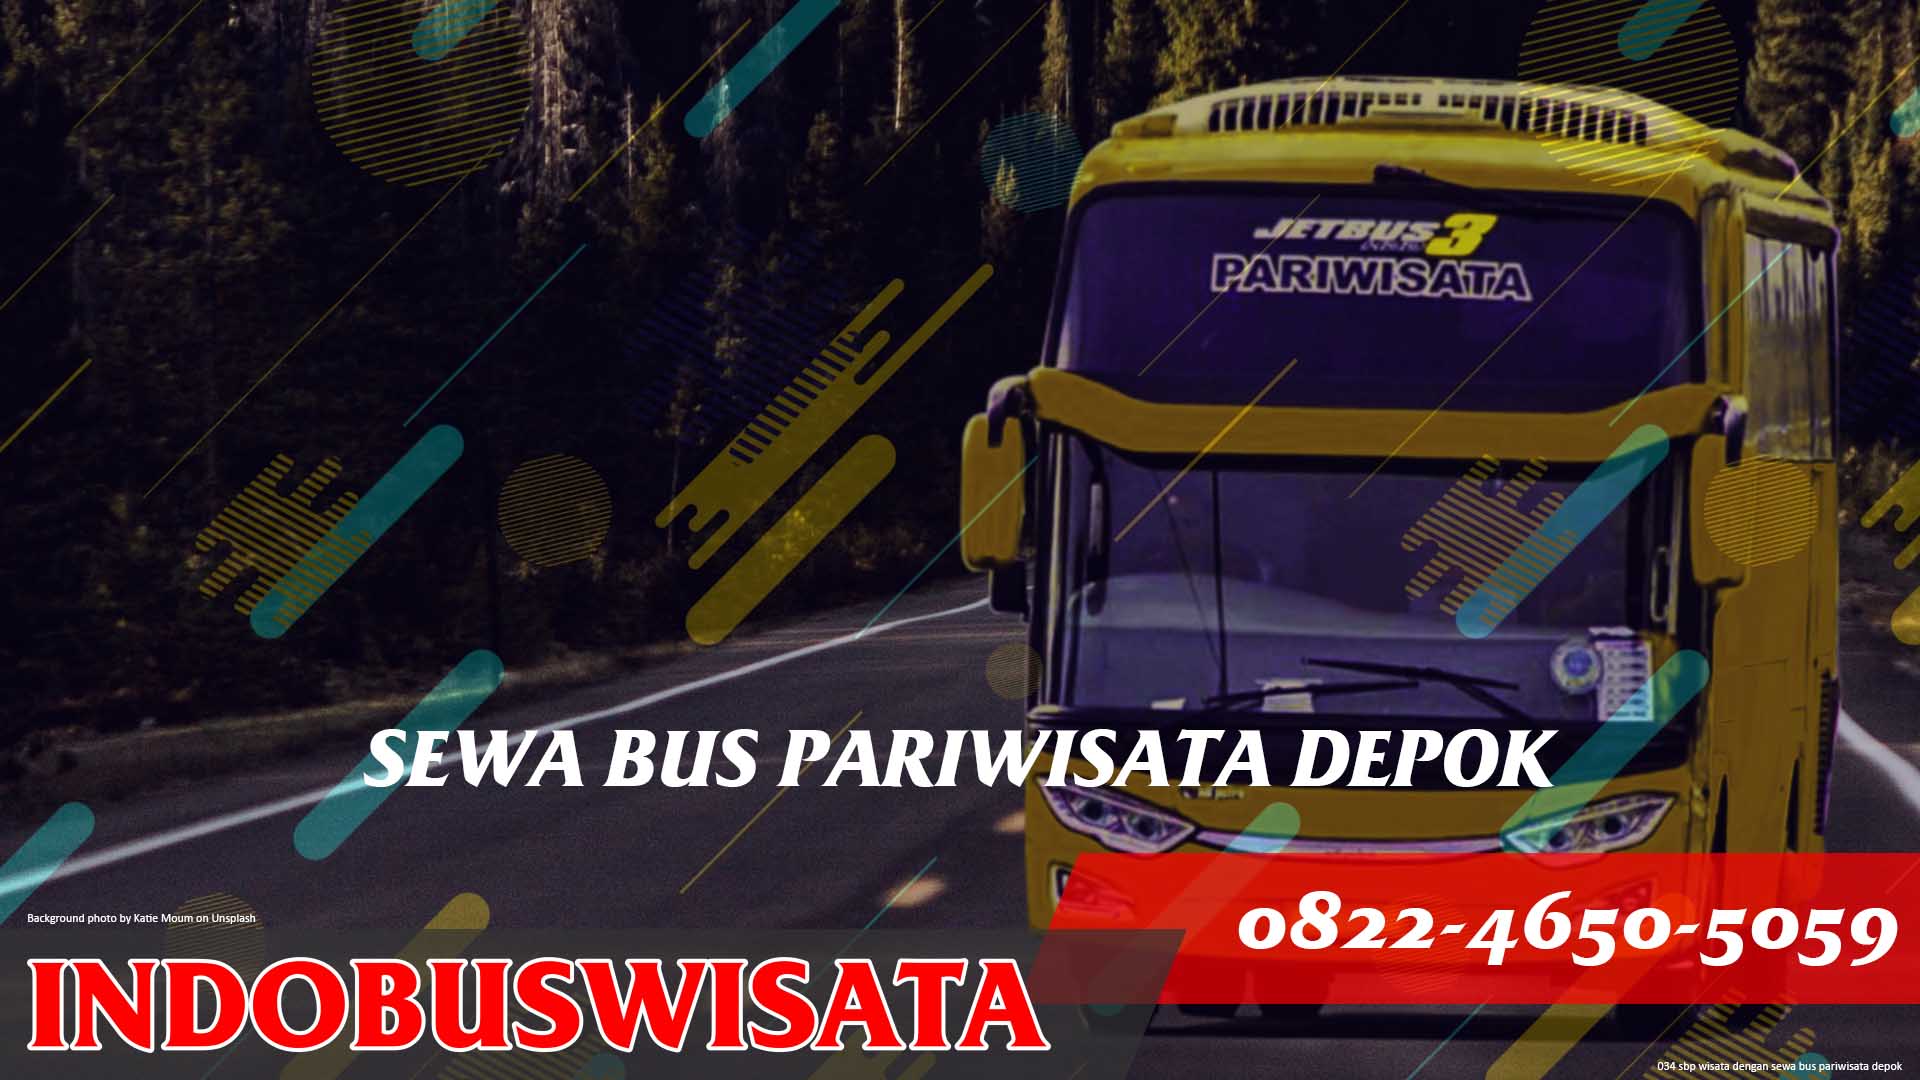 034 Sbp Wisata Dengan Sewa Bus Pariwisata Depok Jetbus 3 Indobuswisata